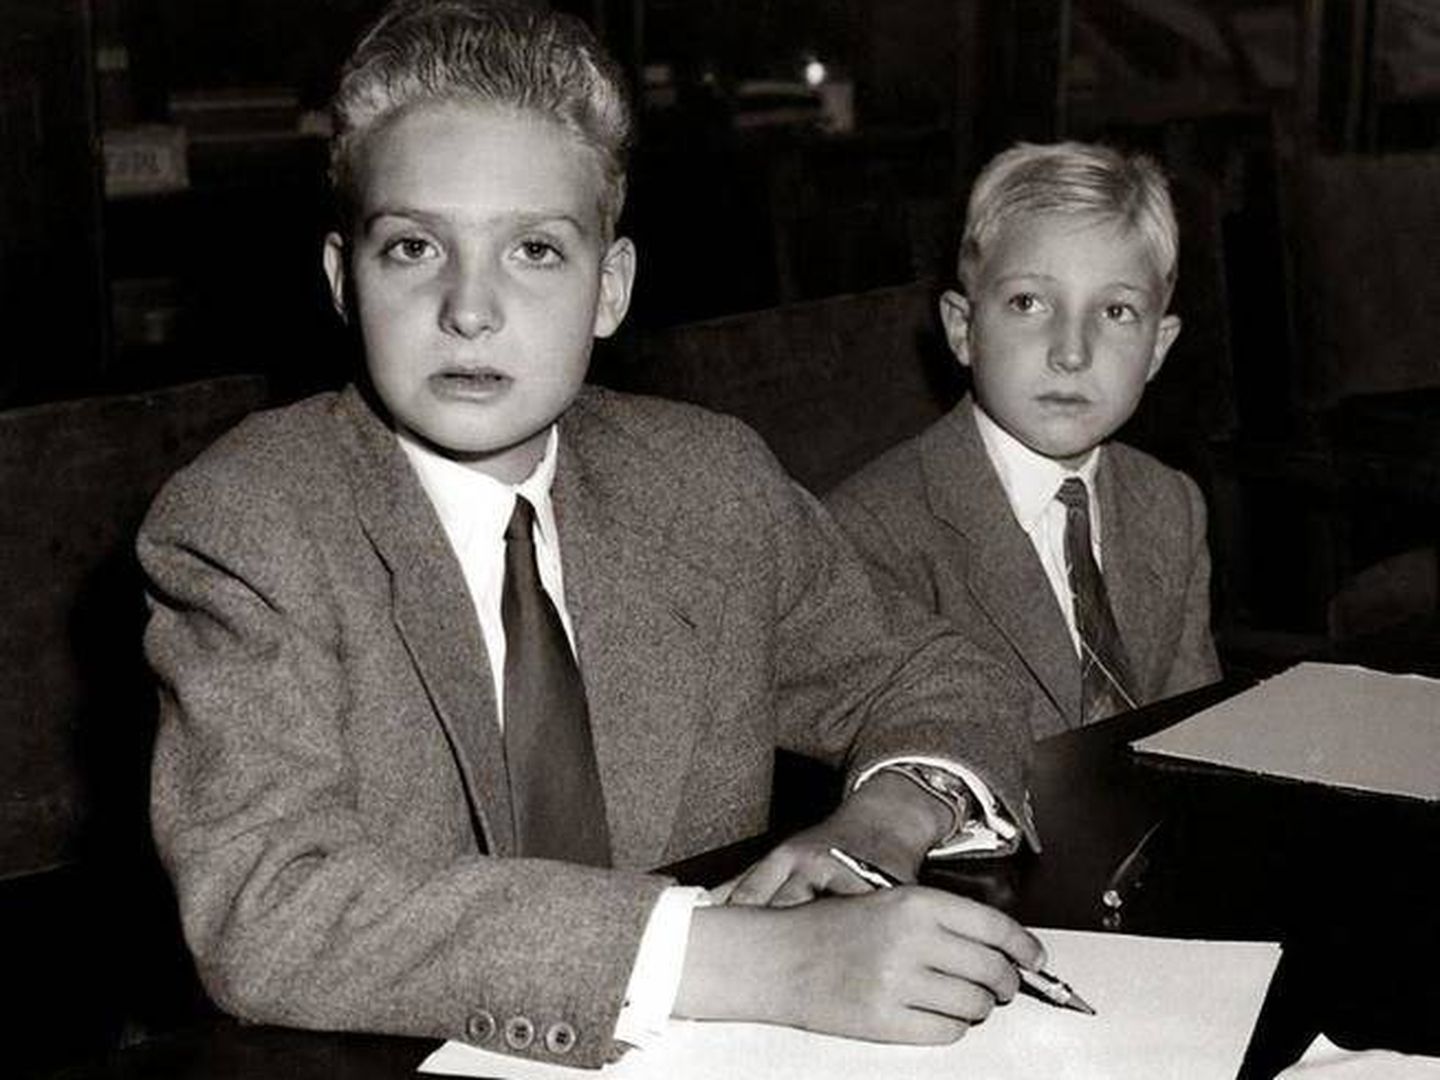  Don Juan Carlos, en primer plano, junto a su hermano. (Archivo)